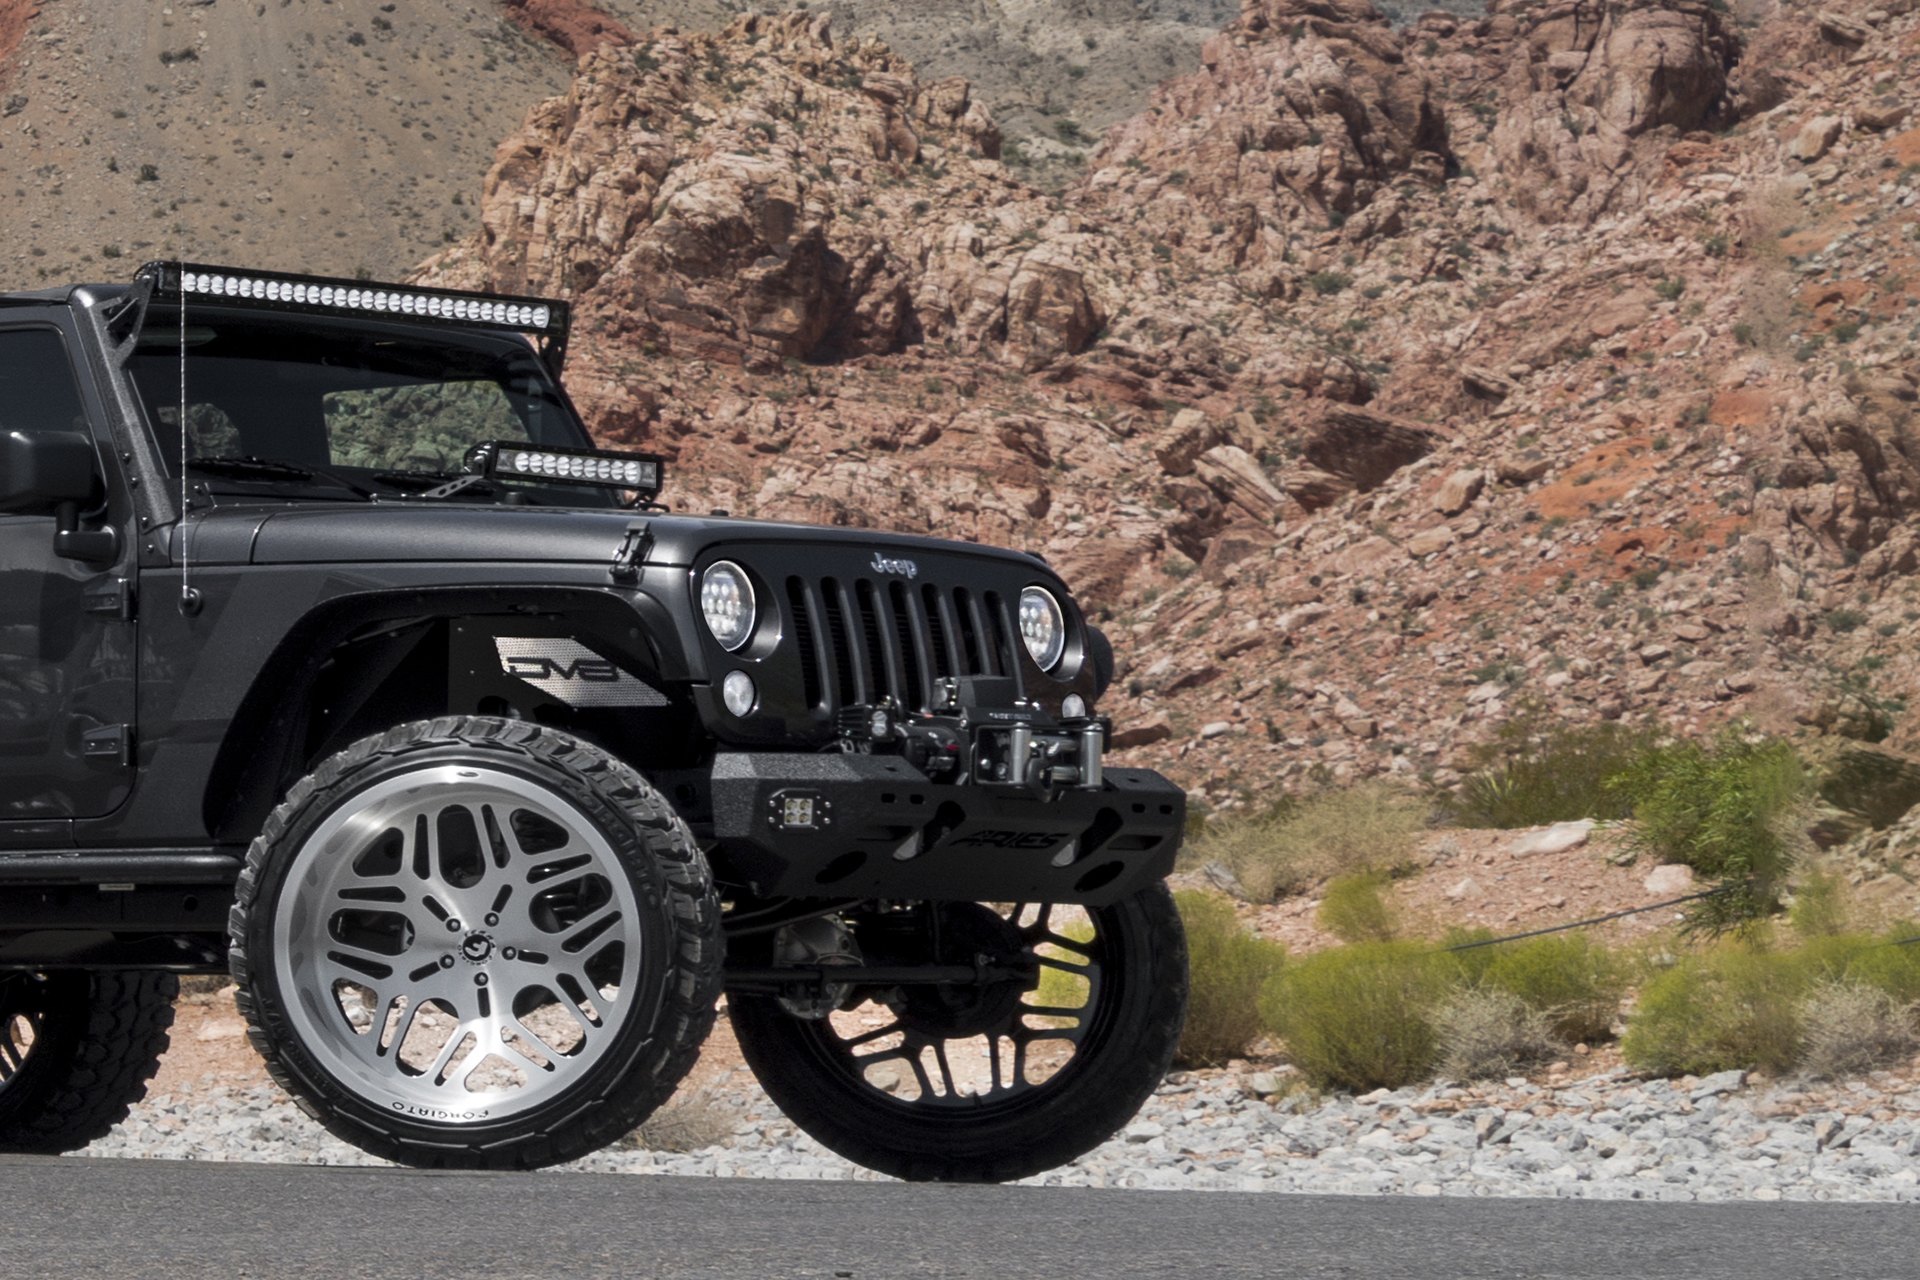 Chrome Forgiato Wheels on Black Lifted Jeep Wrangler - Photo by Forgiato